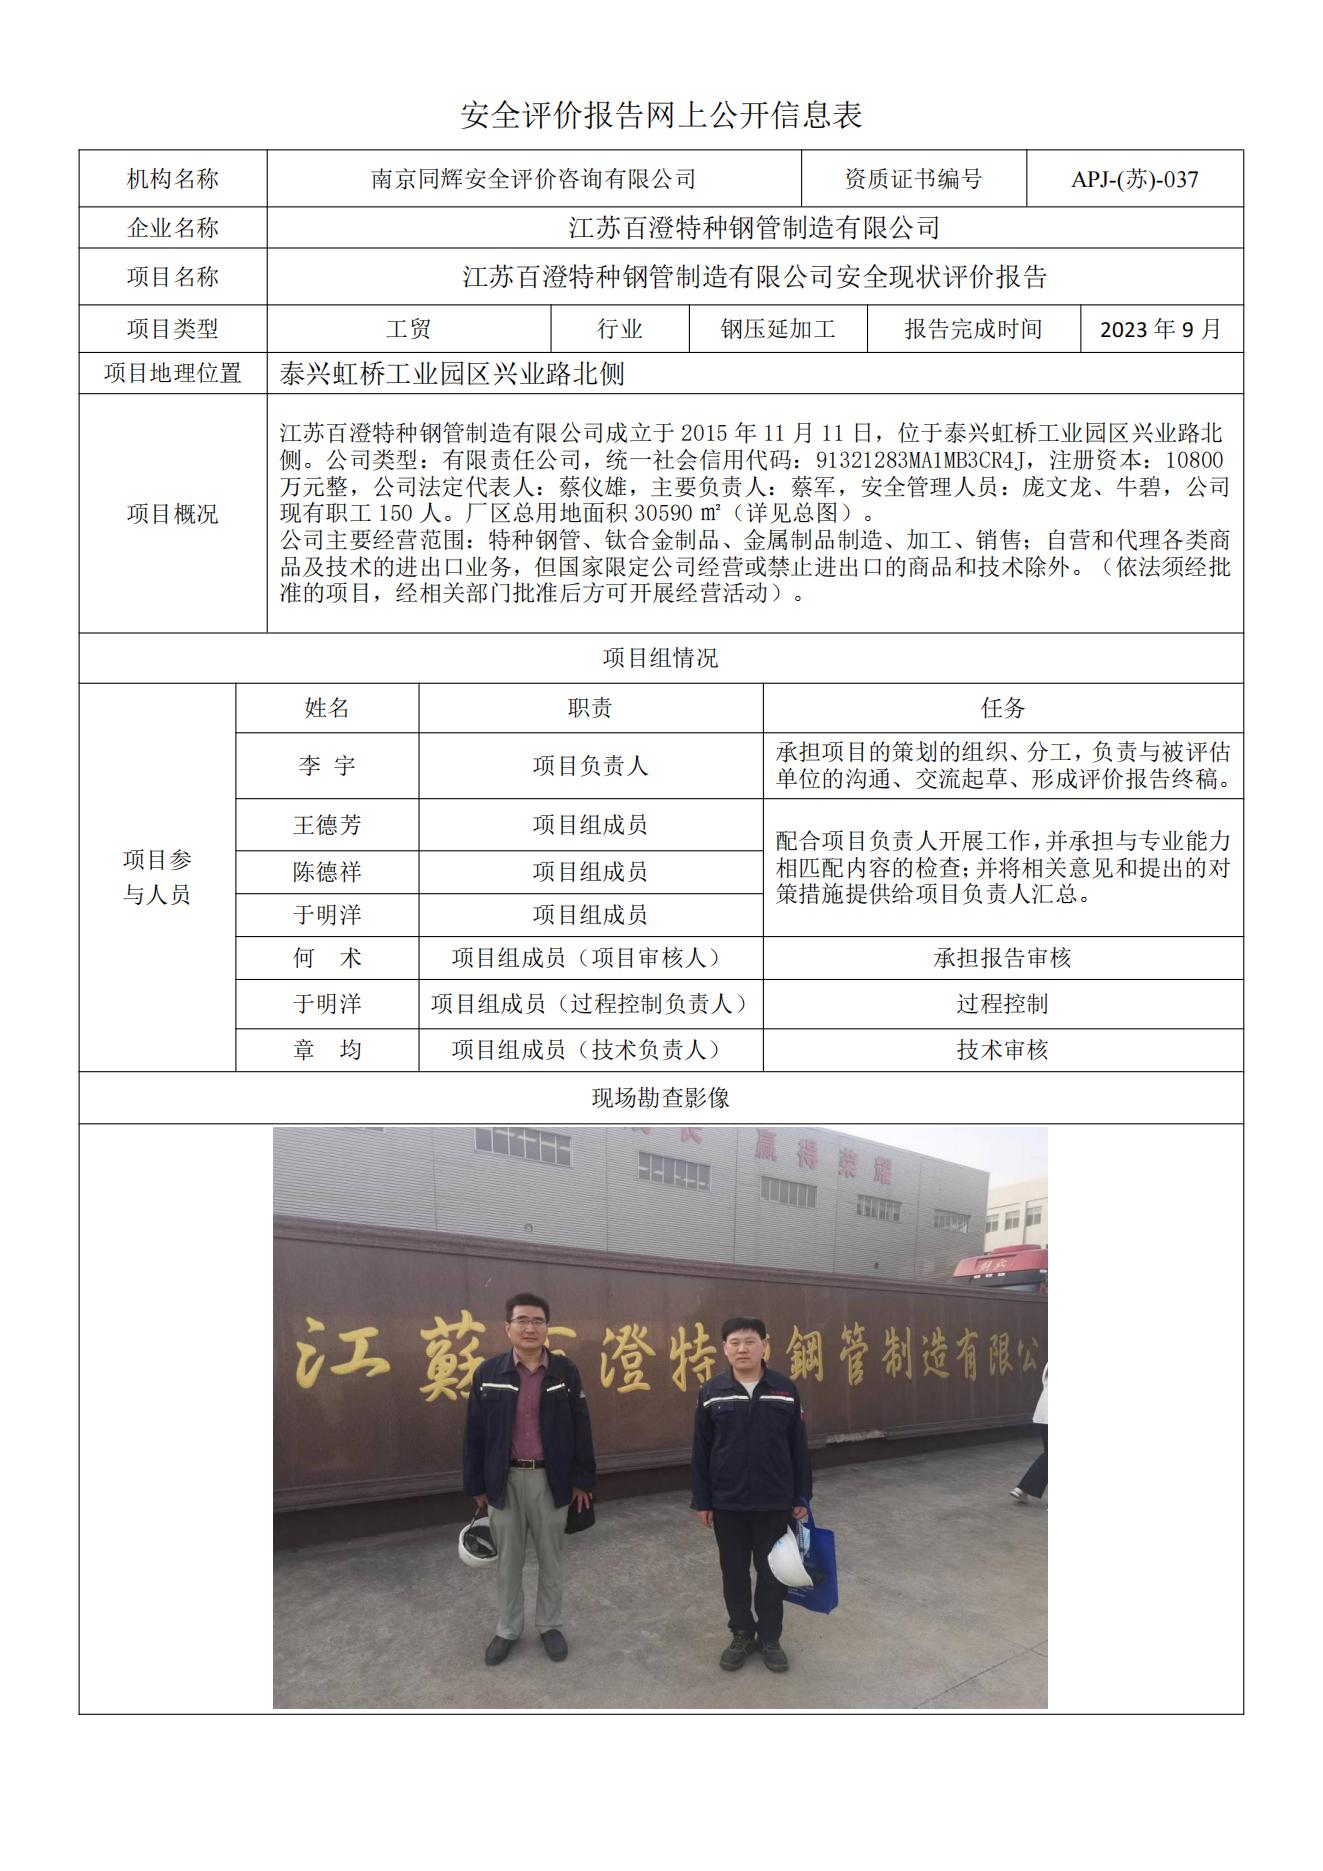 江苏百澄特种钢管制造有限公司安全现状评价报告  网上公开信息表_00.jpg